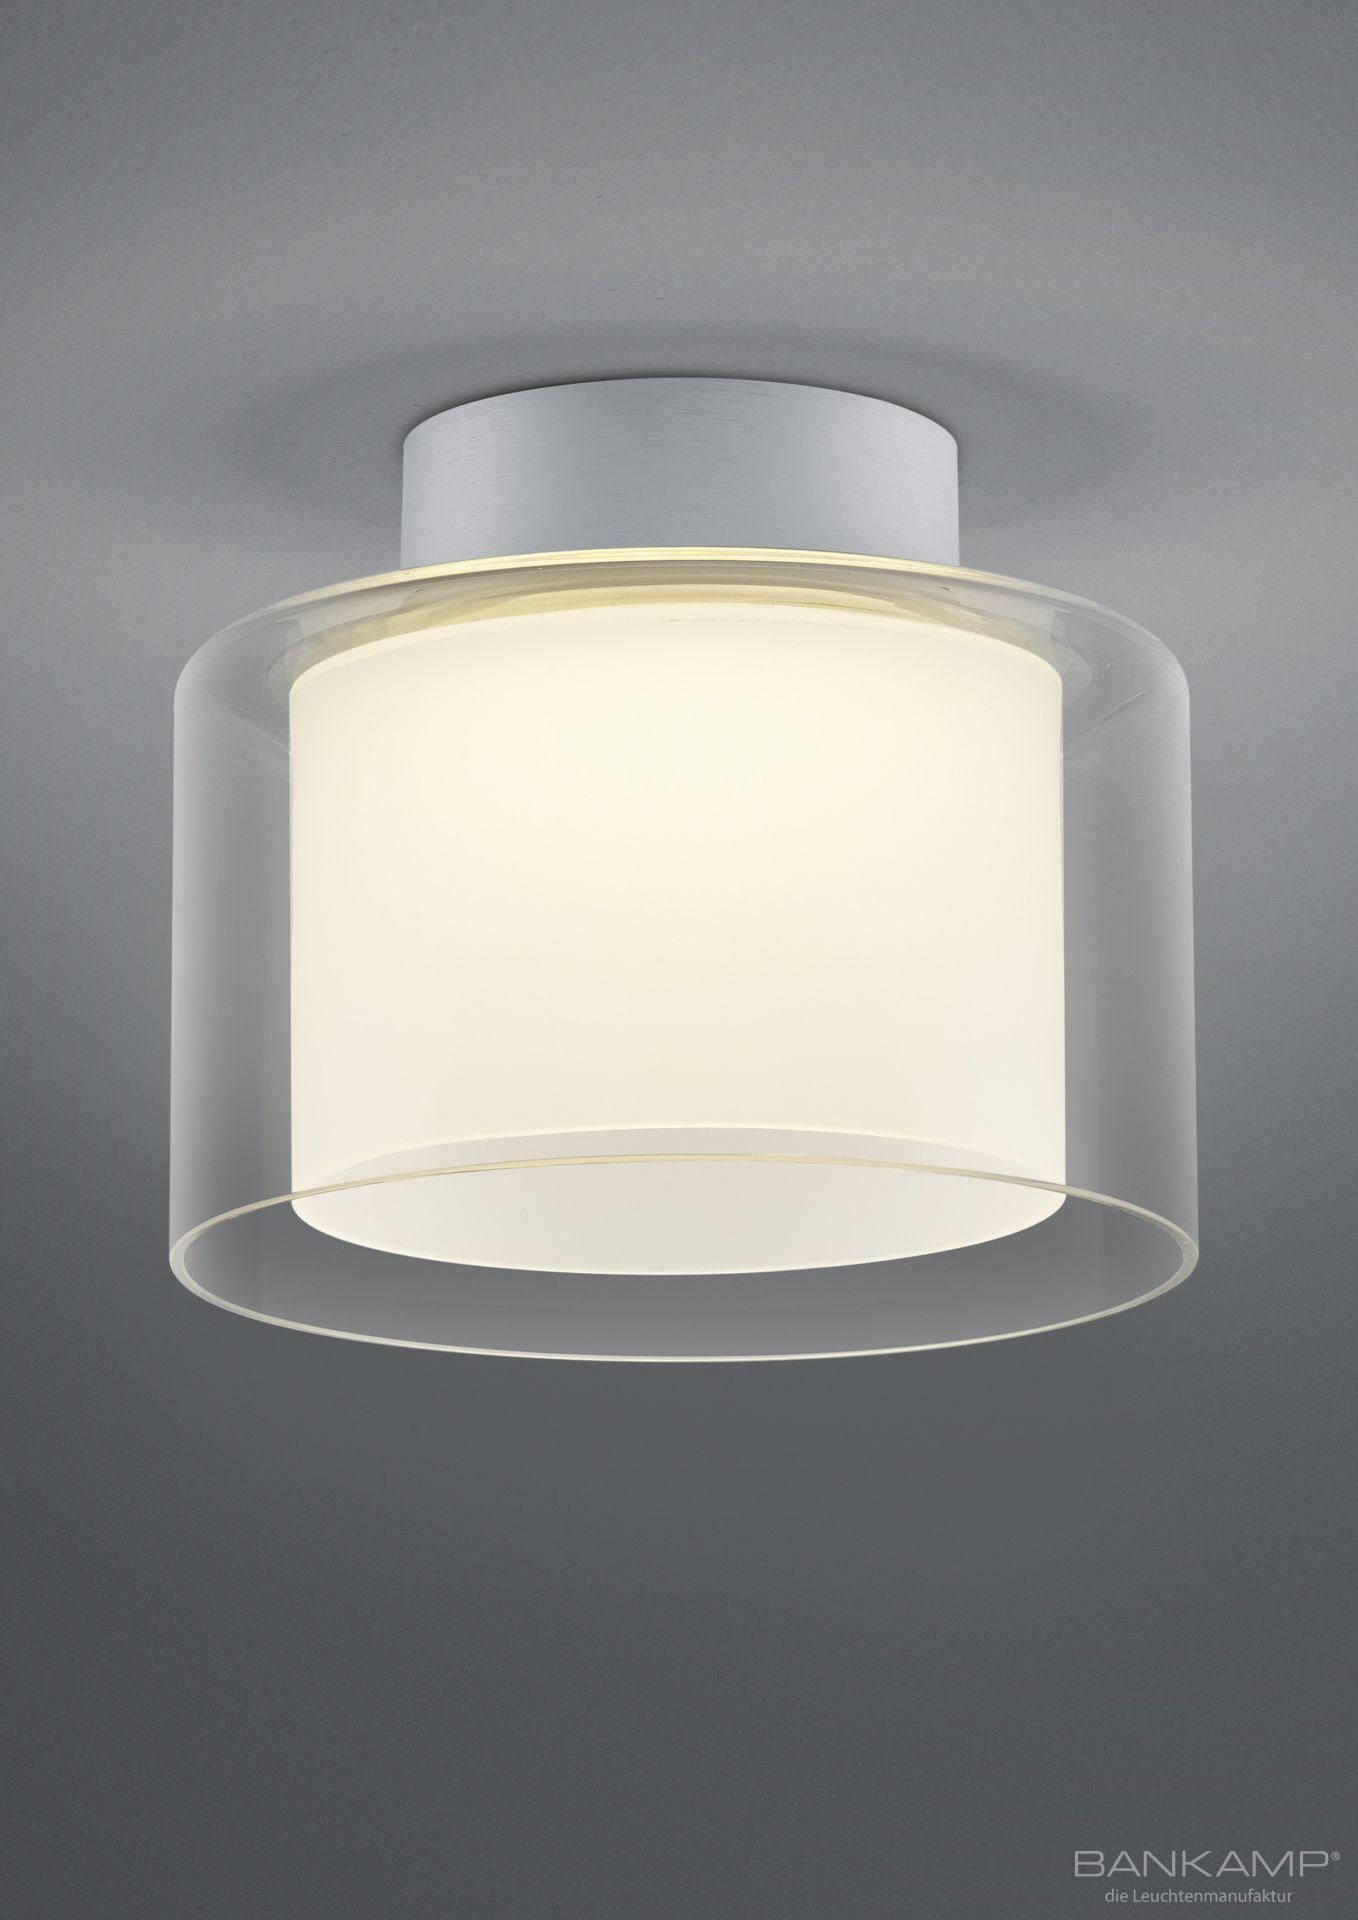 BANKAMP Leuchtenmanufaktur Moderne Deckenleuchten & Deckenlampen fürs Wohnzimmer von BANKAMP Leuchtenmanufaktur LED-Deckenleuchte Grand Clear 7770/1-36